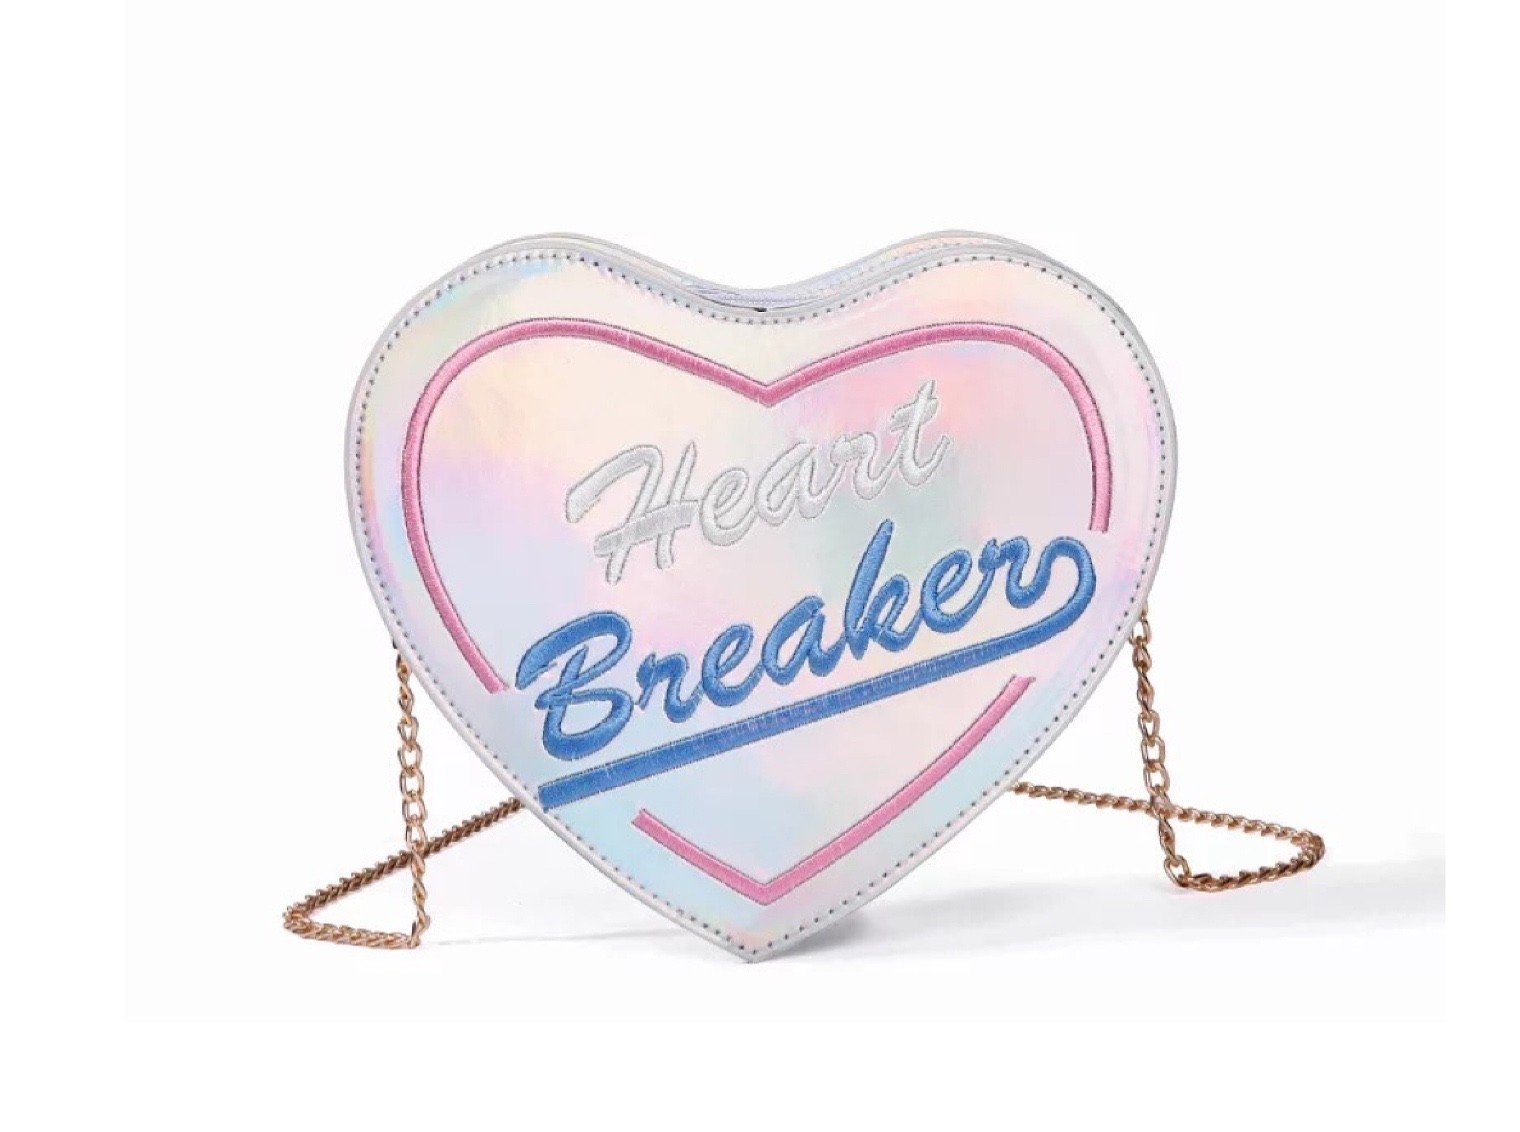 Heartbreaker Breaks by Paloma Meir